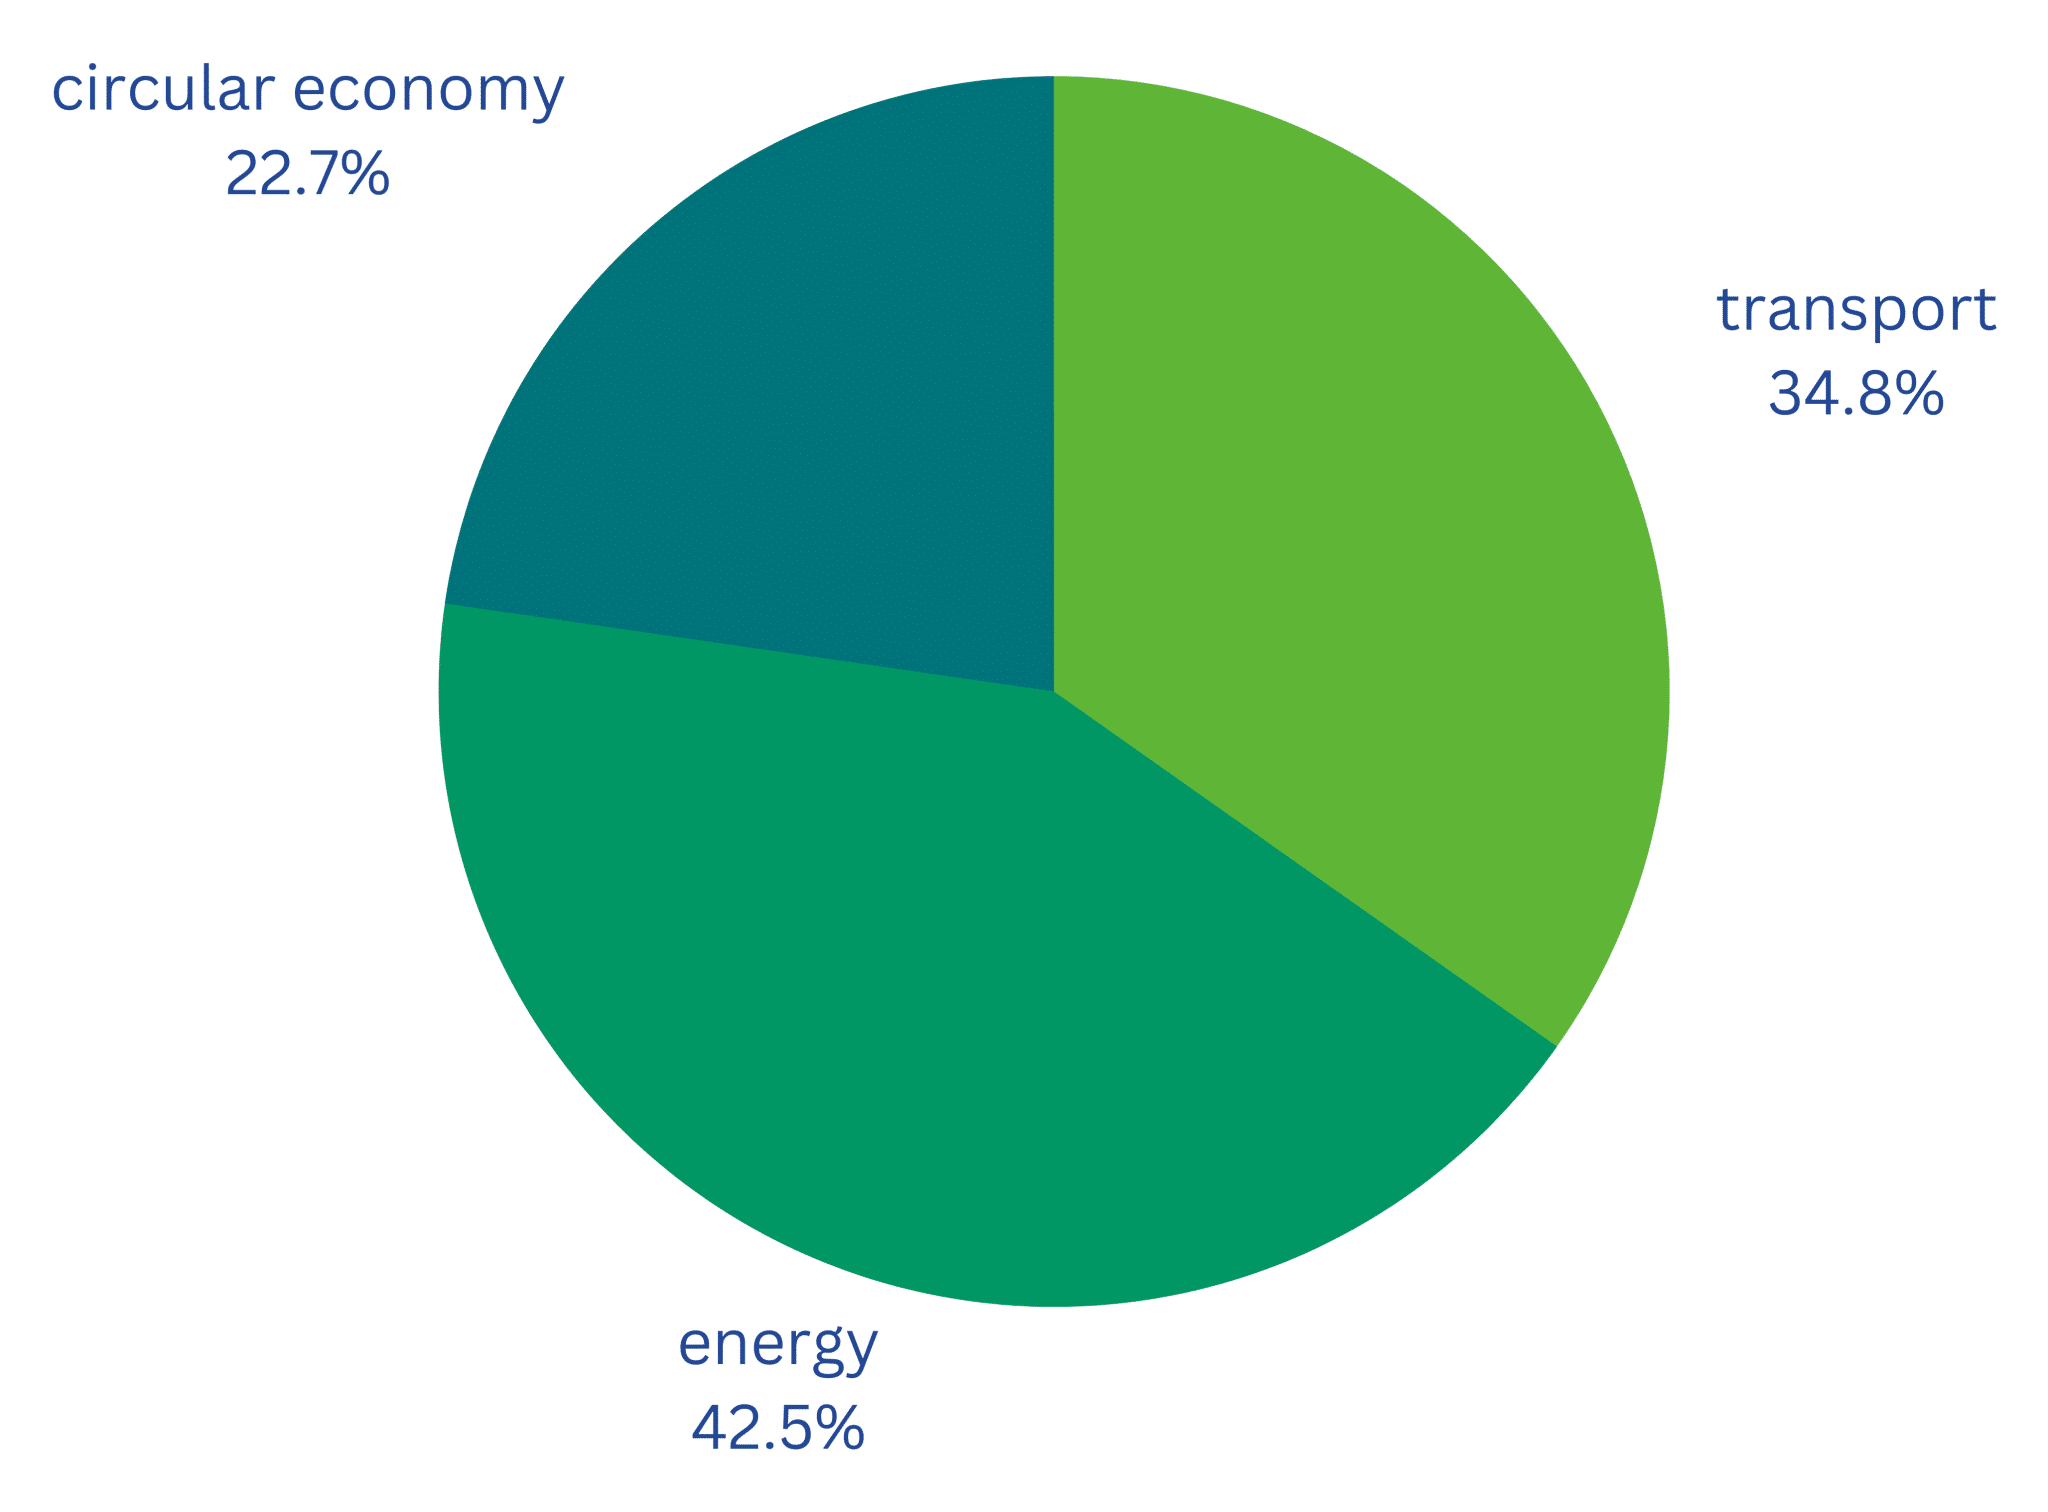 سبز شدن: بررسی اجمالی فناوری سبز اروپا | فوریه 2023 | ارائه شده توسط Net Zero Insights